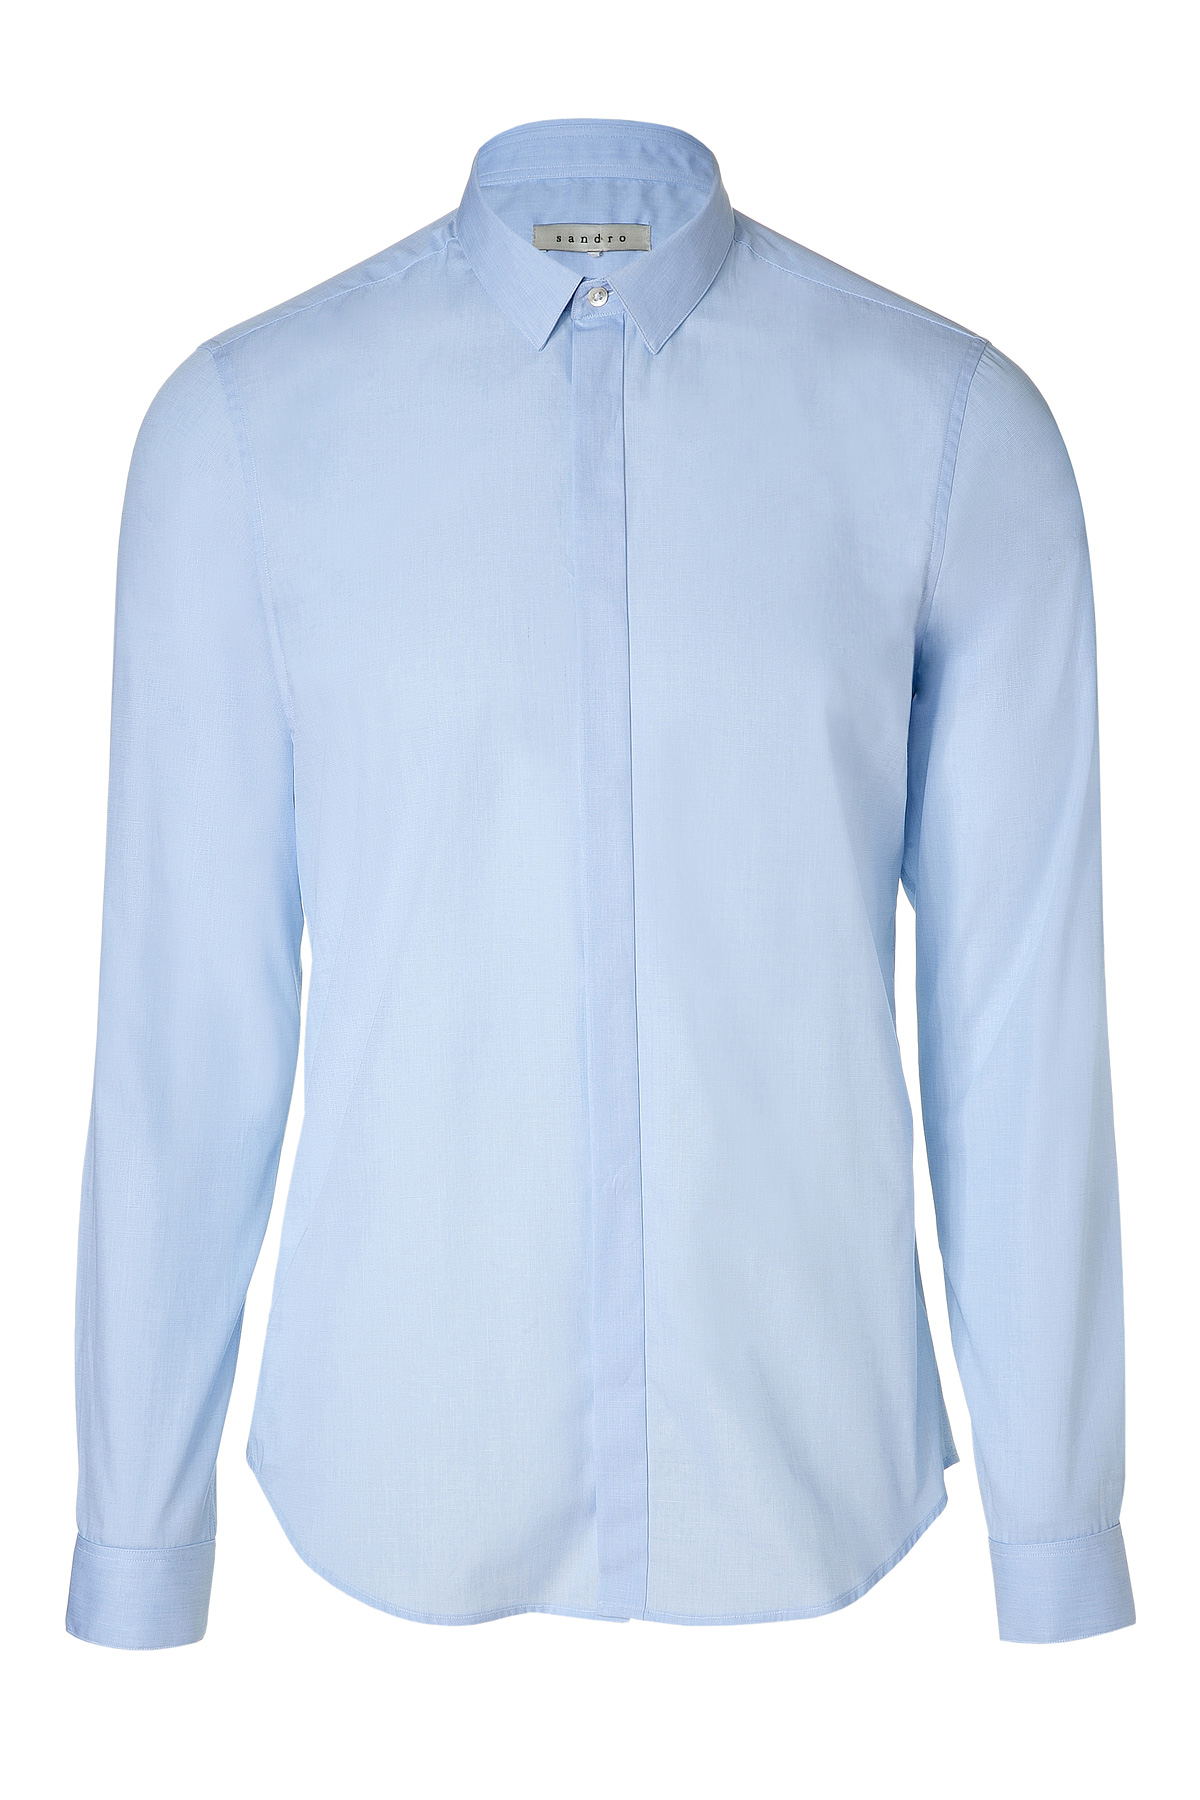 Sandro Light Blue Shirt in Blue for Men | Lyst